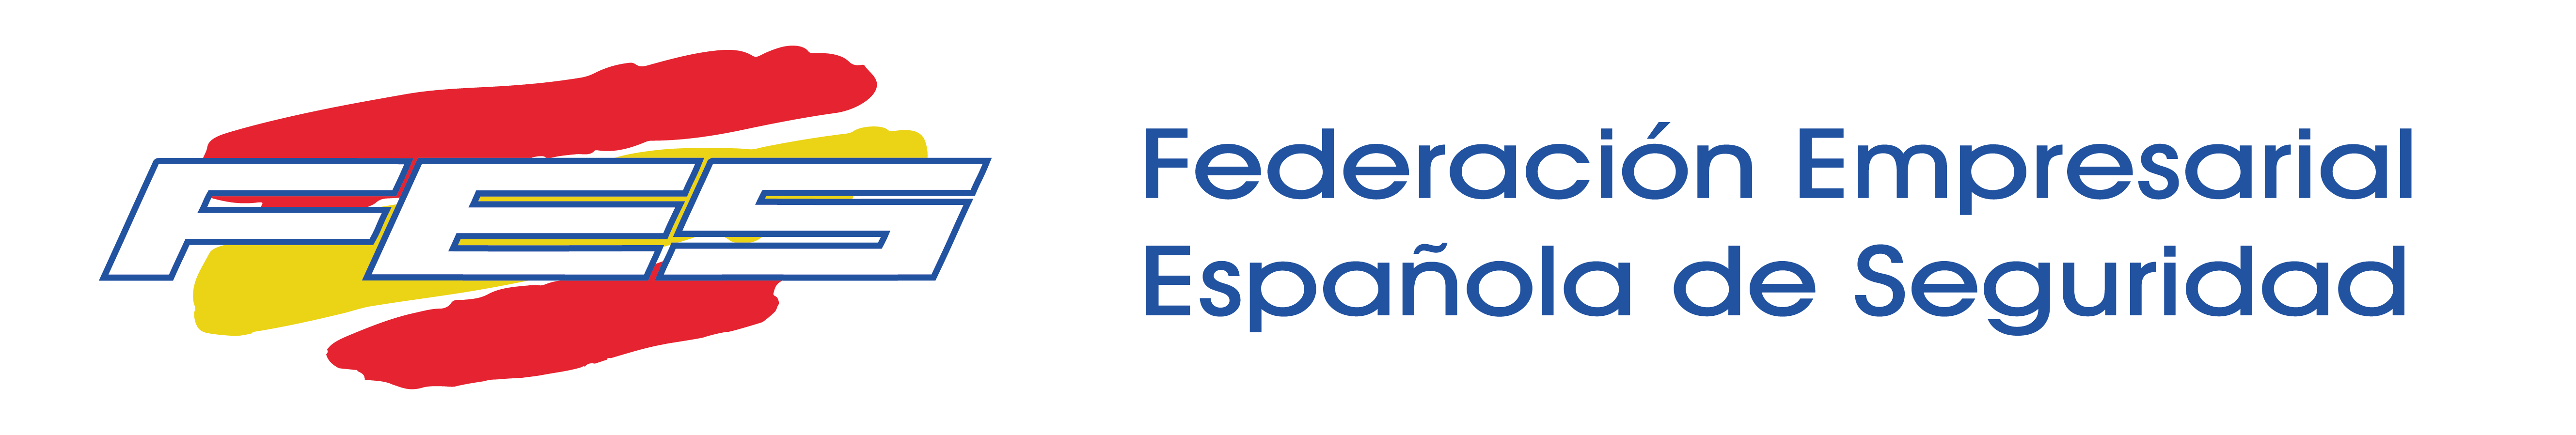 FES - Federación Empresarial Española de Seguridad